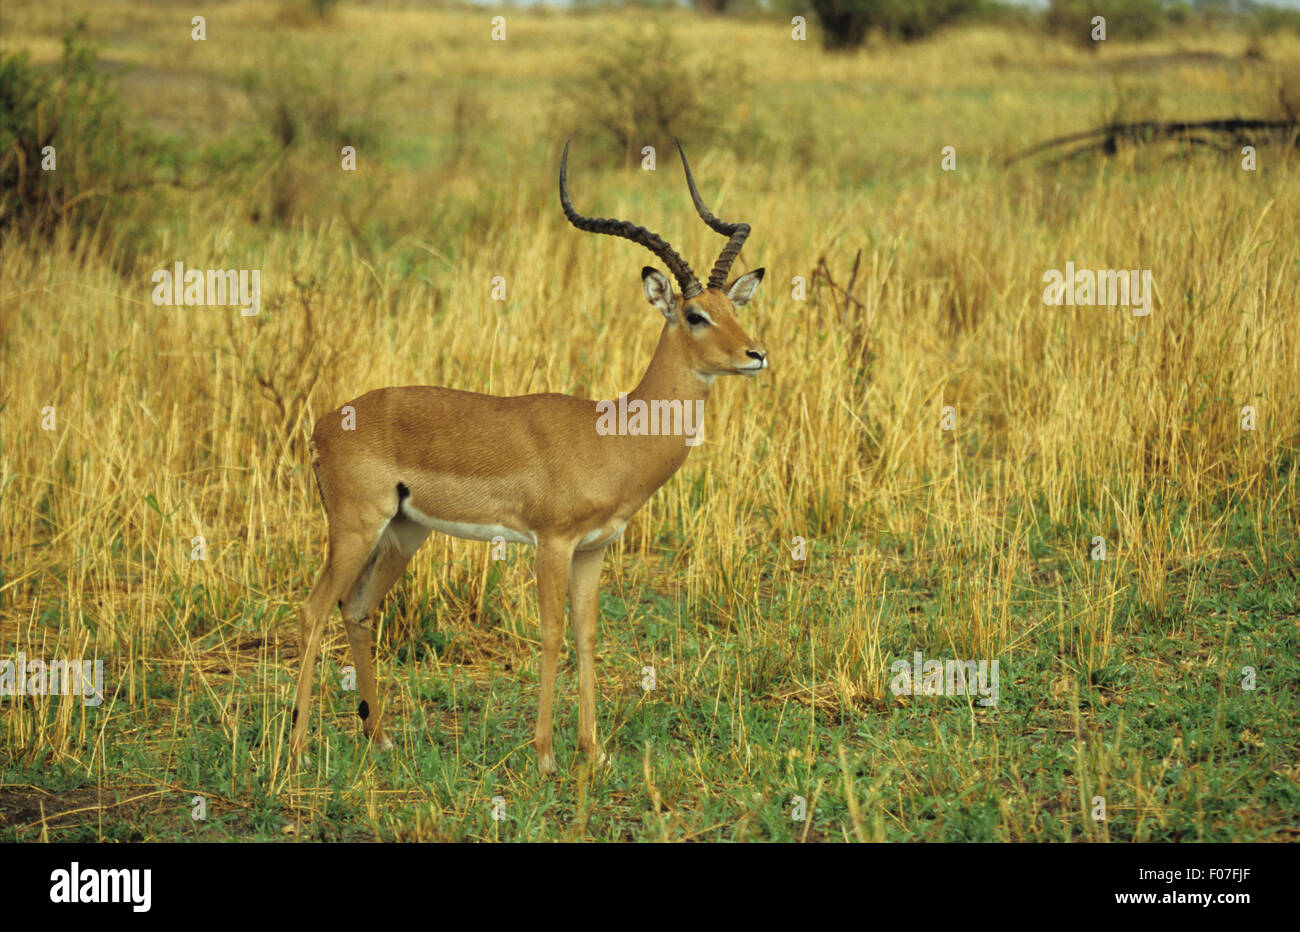 Impala macho con largos cuernos tomadas de perfil mirando a la derecha de pie en el césped largo Foto de stock